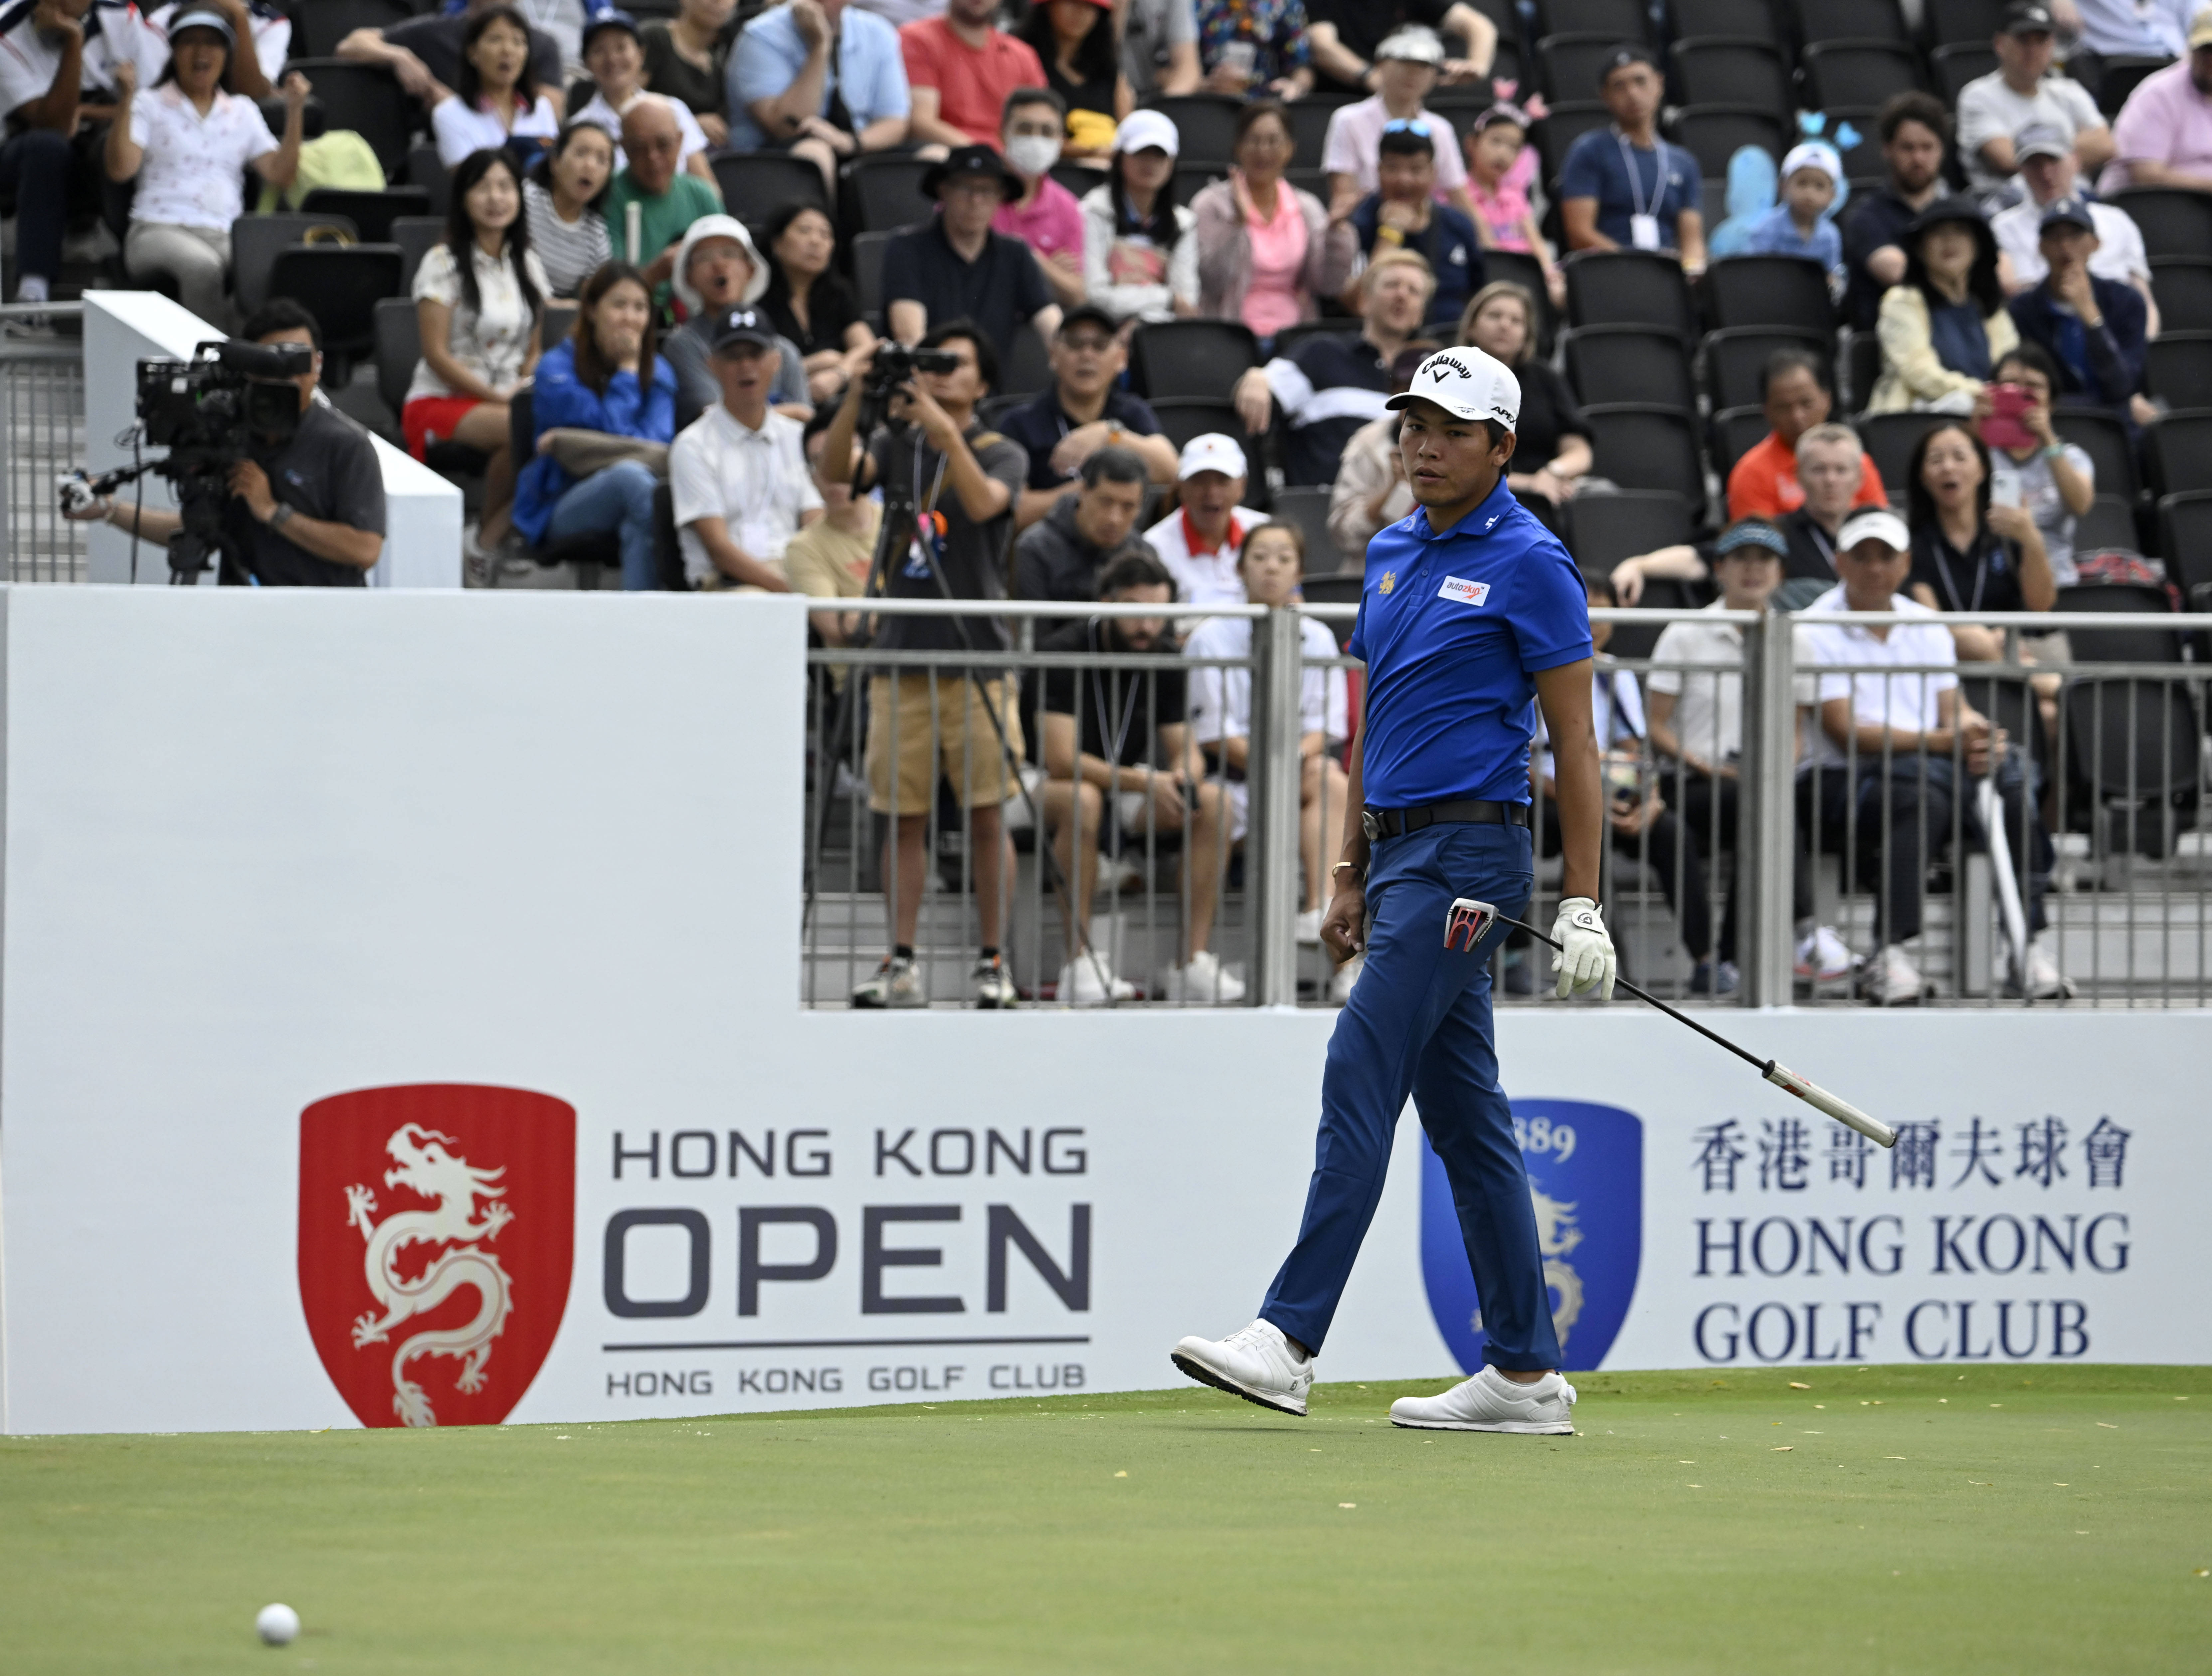 【168sports】香港高尔夫球公开赛移动日 澳洲球星史密夫与泰国球手孔瓦迈并列领先